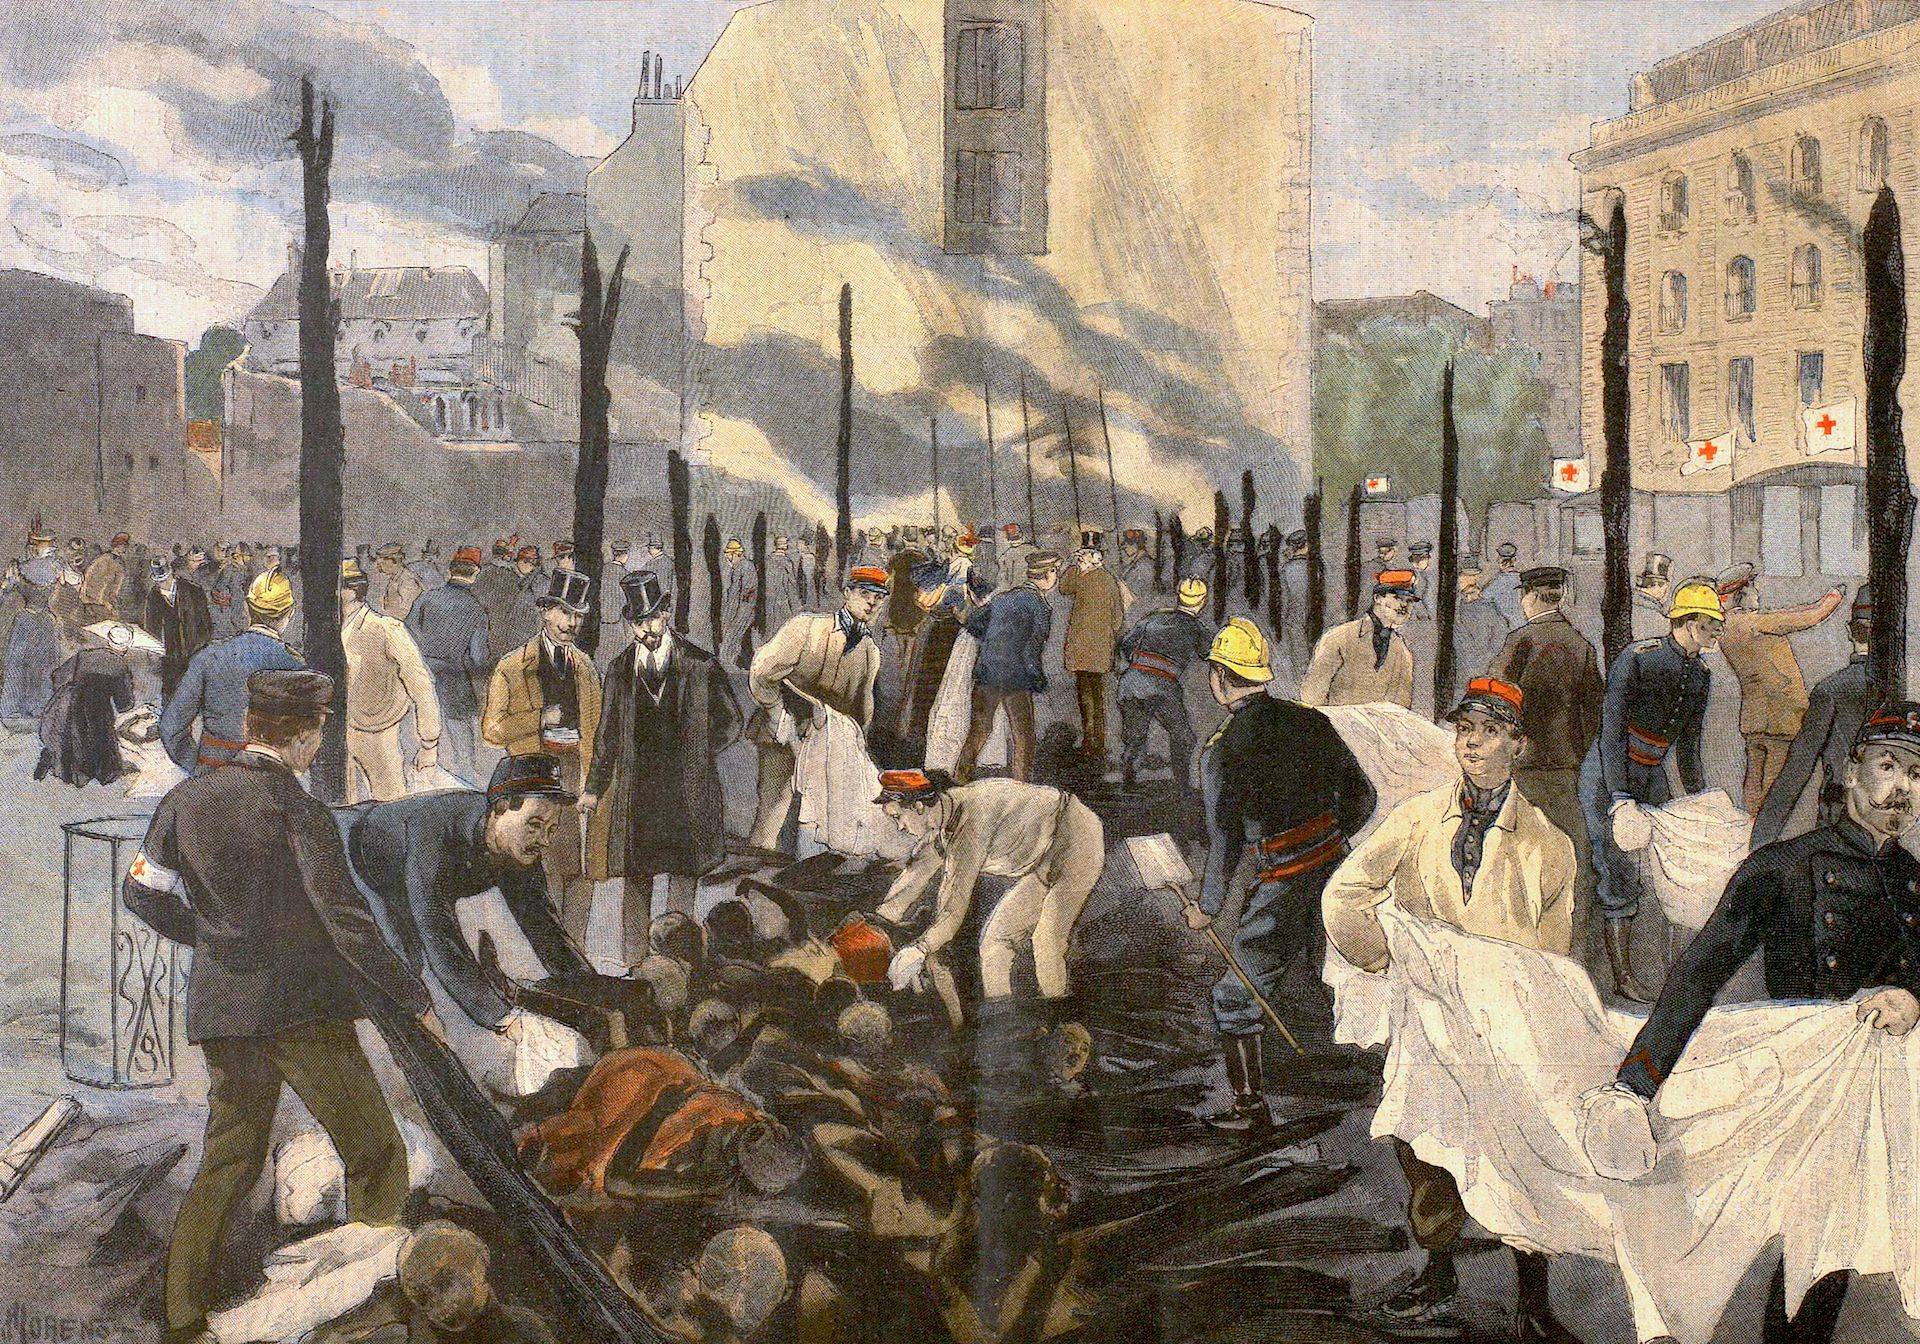 Les cadavres retirés des décombres, Le Petit Journal. Supplément du dimanche, 16 mai 1897 - source Gallica-BnF